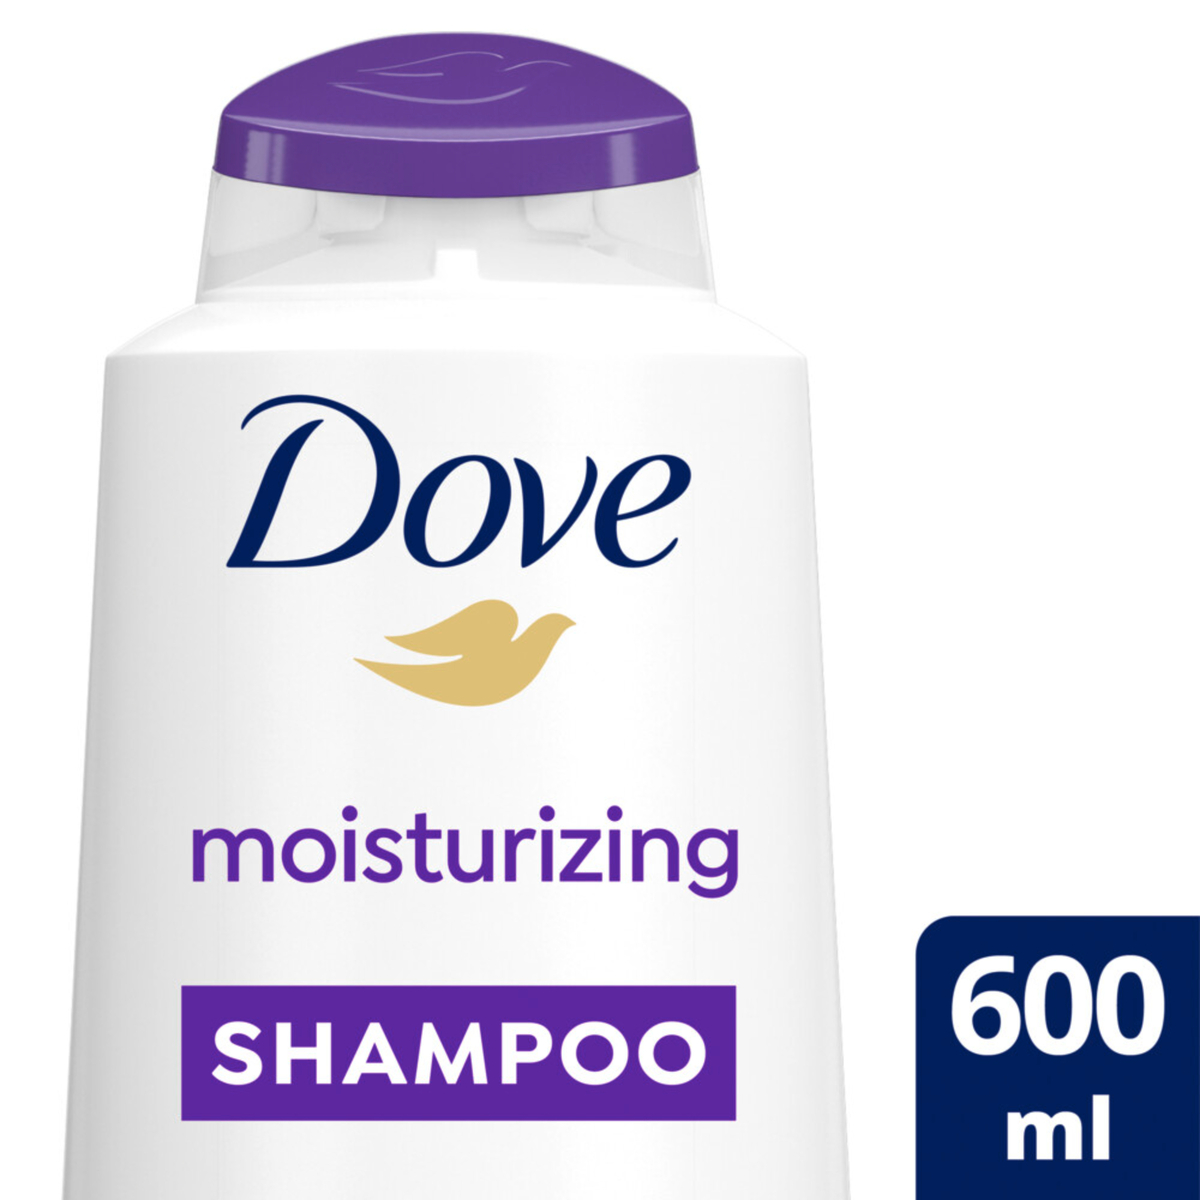 اشتري قم بشراء دوف شامبو مرطب 600مل Online at Best Price من الموقع - من لولو هايبر ماركت Shampoo في السعودية